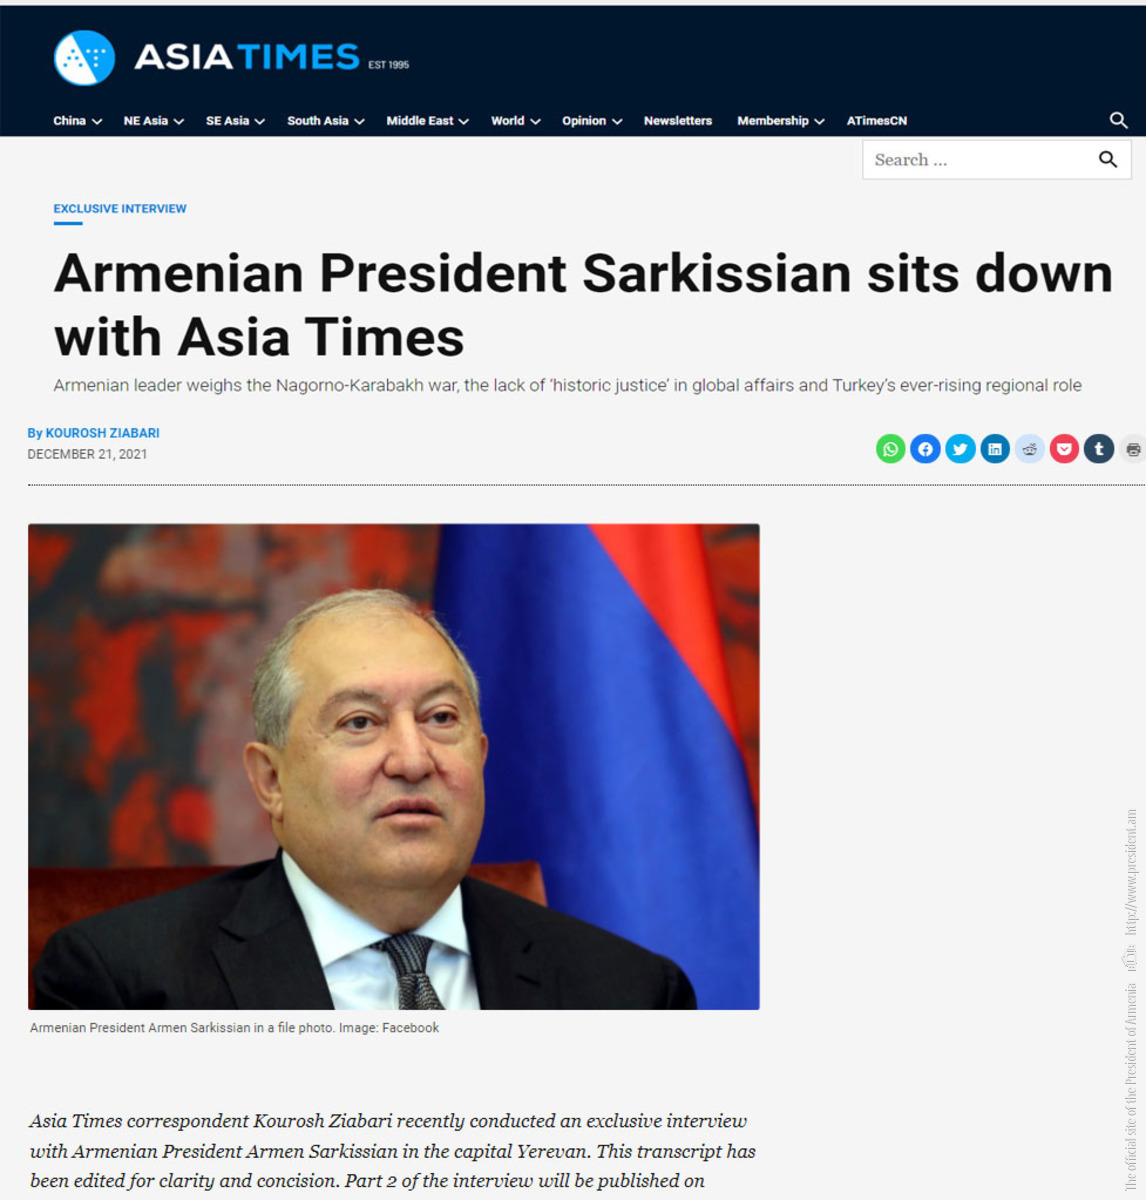 Հուսով եմ, որ մենք կվերադառնանք բանակցություններին ու ստիպված չենք լինի վերաստեղծել կամ ստեղծել նոր ձևաչափ. նախագահ Արմեն Սարգսյանի հարցազրույցը Asia Times-ին